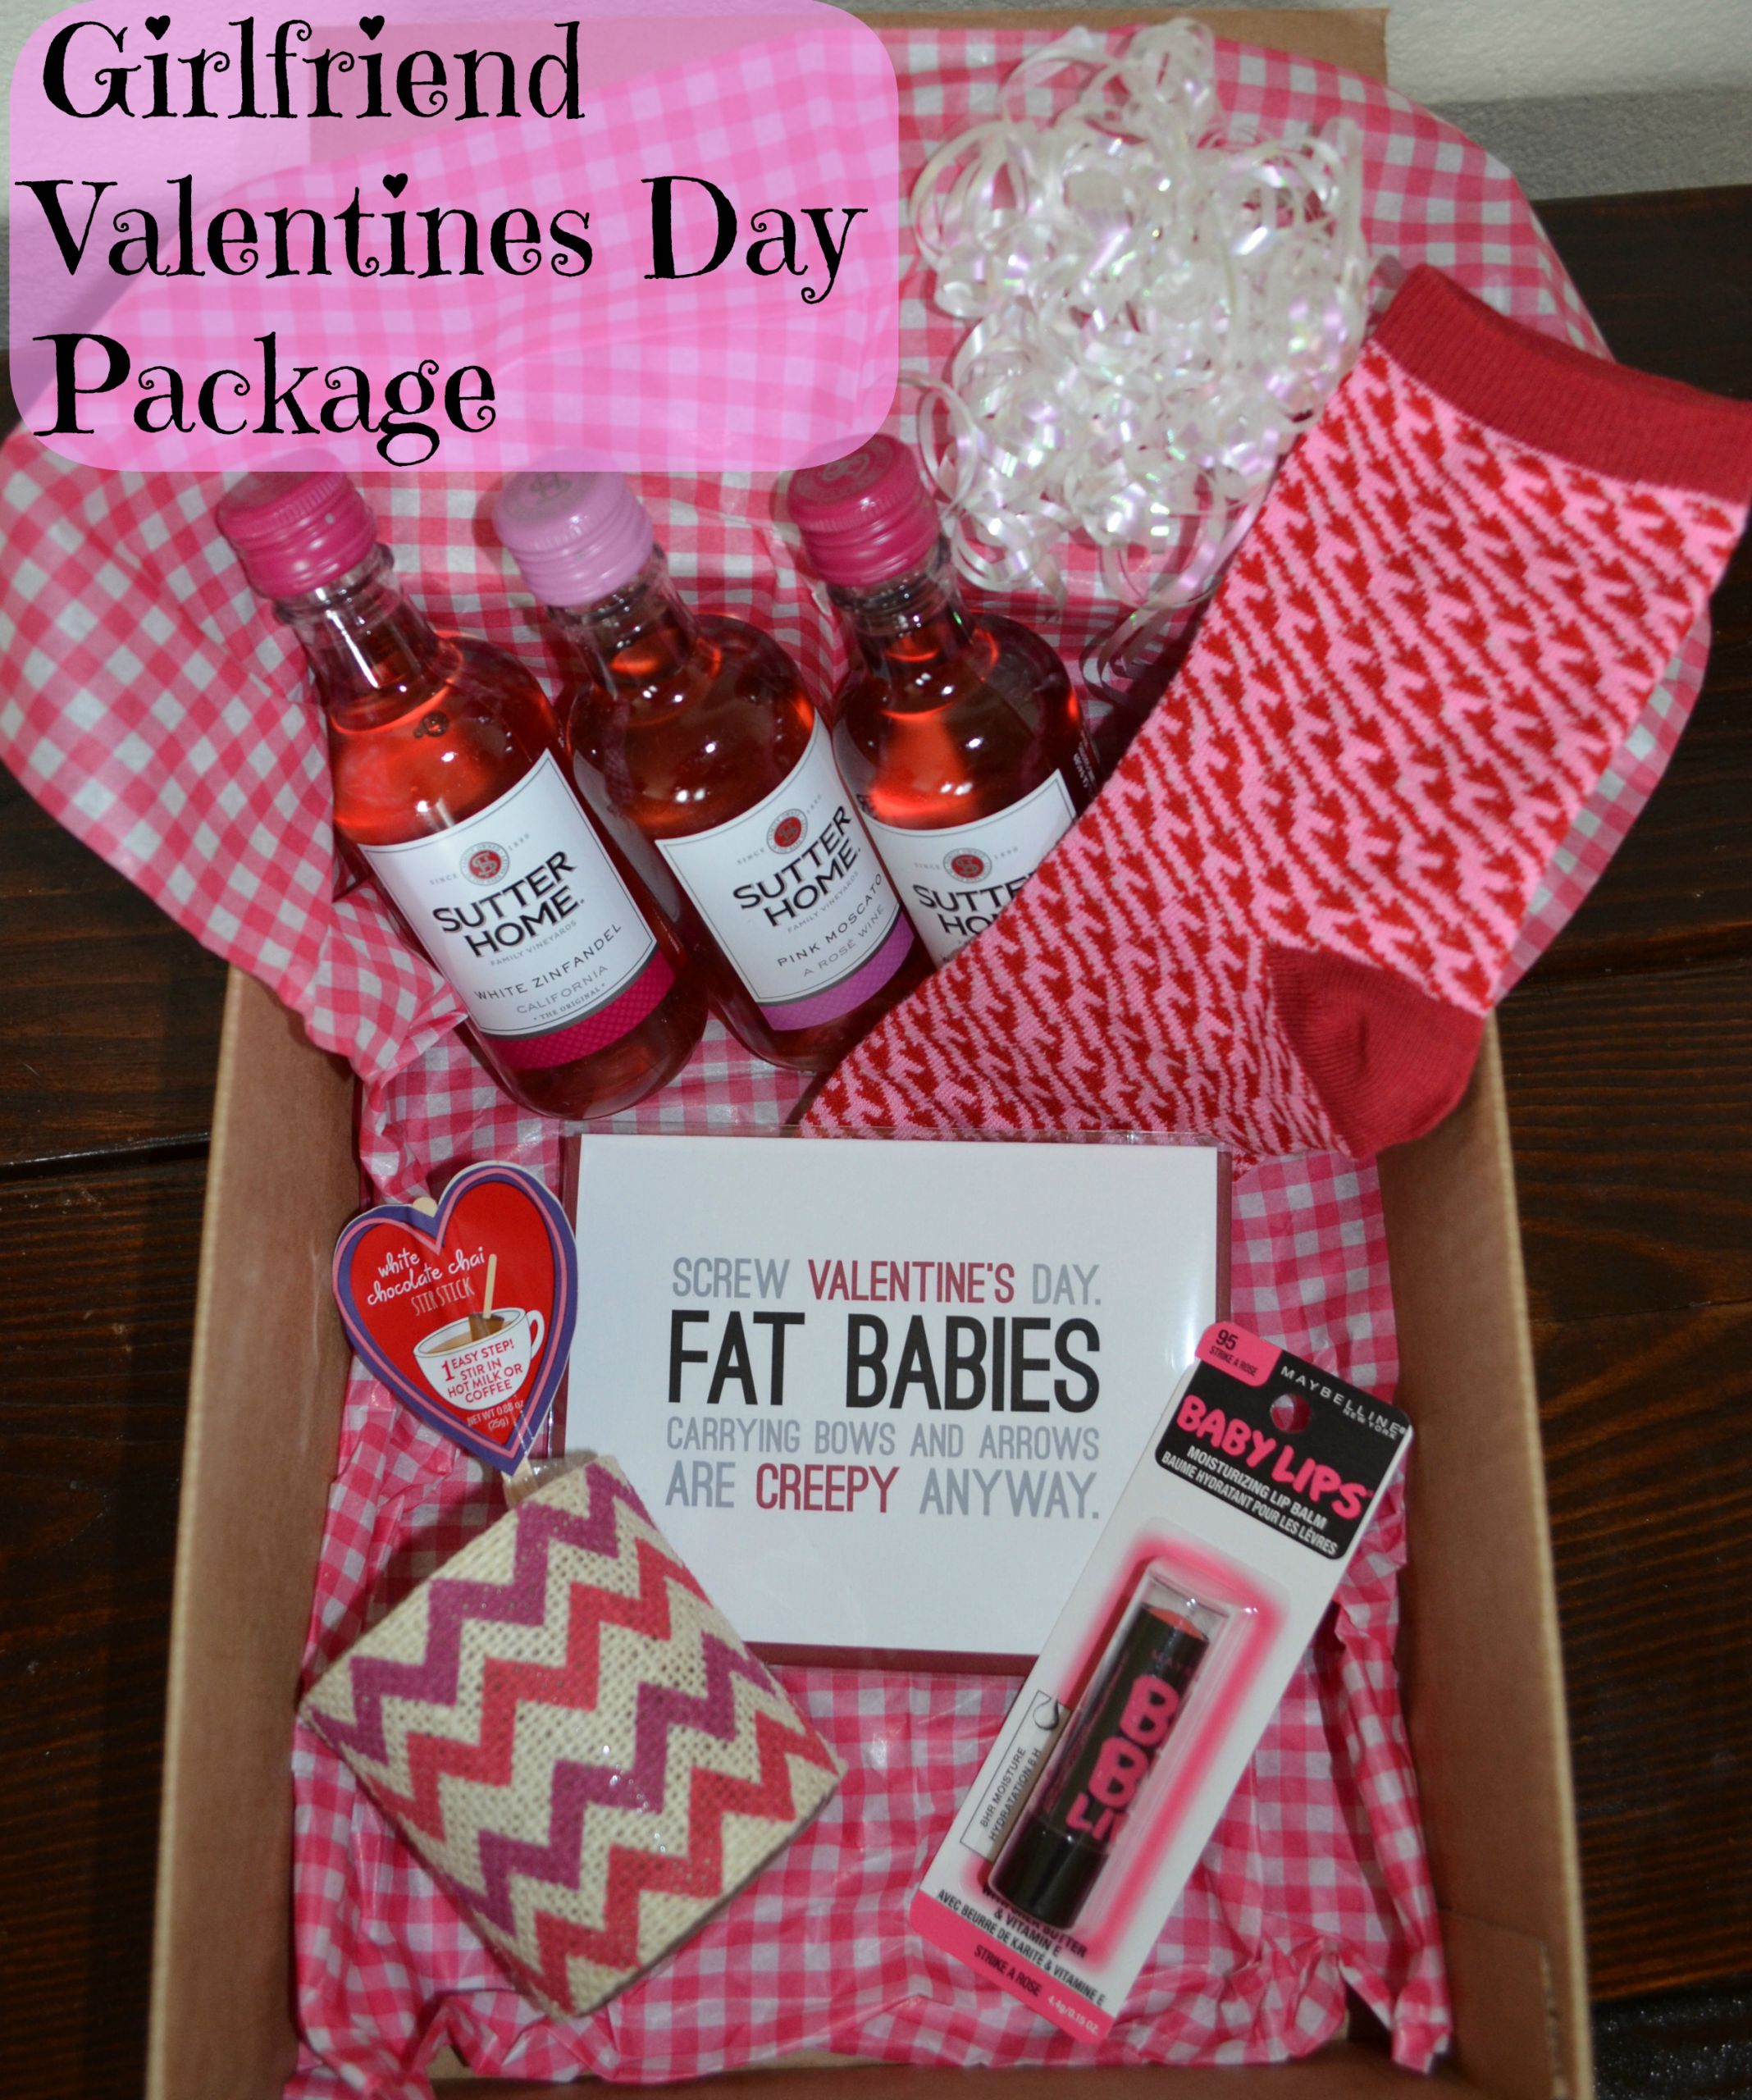 Valentines Gift Ideas Boyfriend
 24 LOVELY VALENTINE S DAY GIFTS FOR YOUR BOYFRIEND